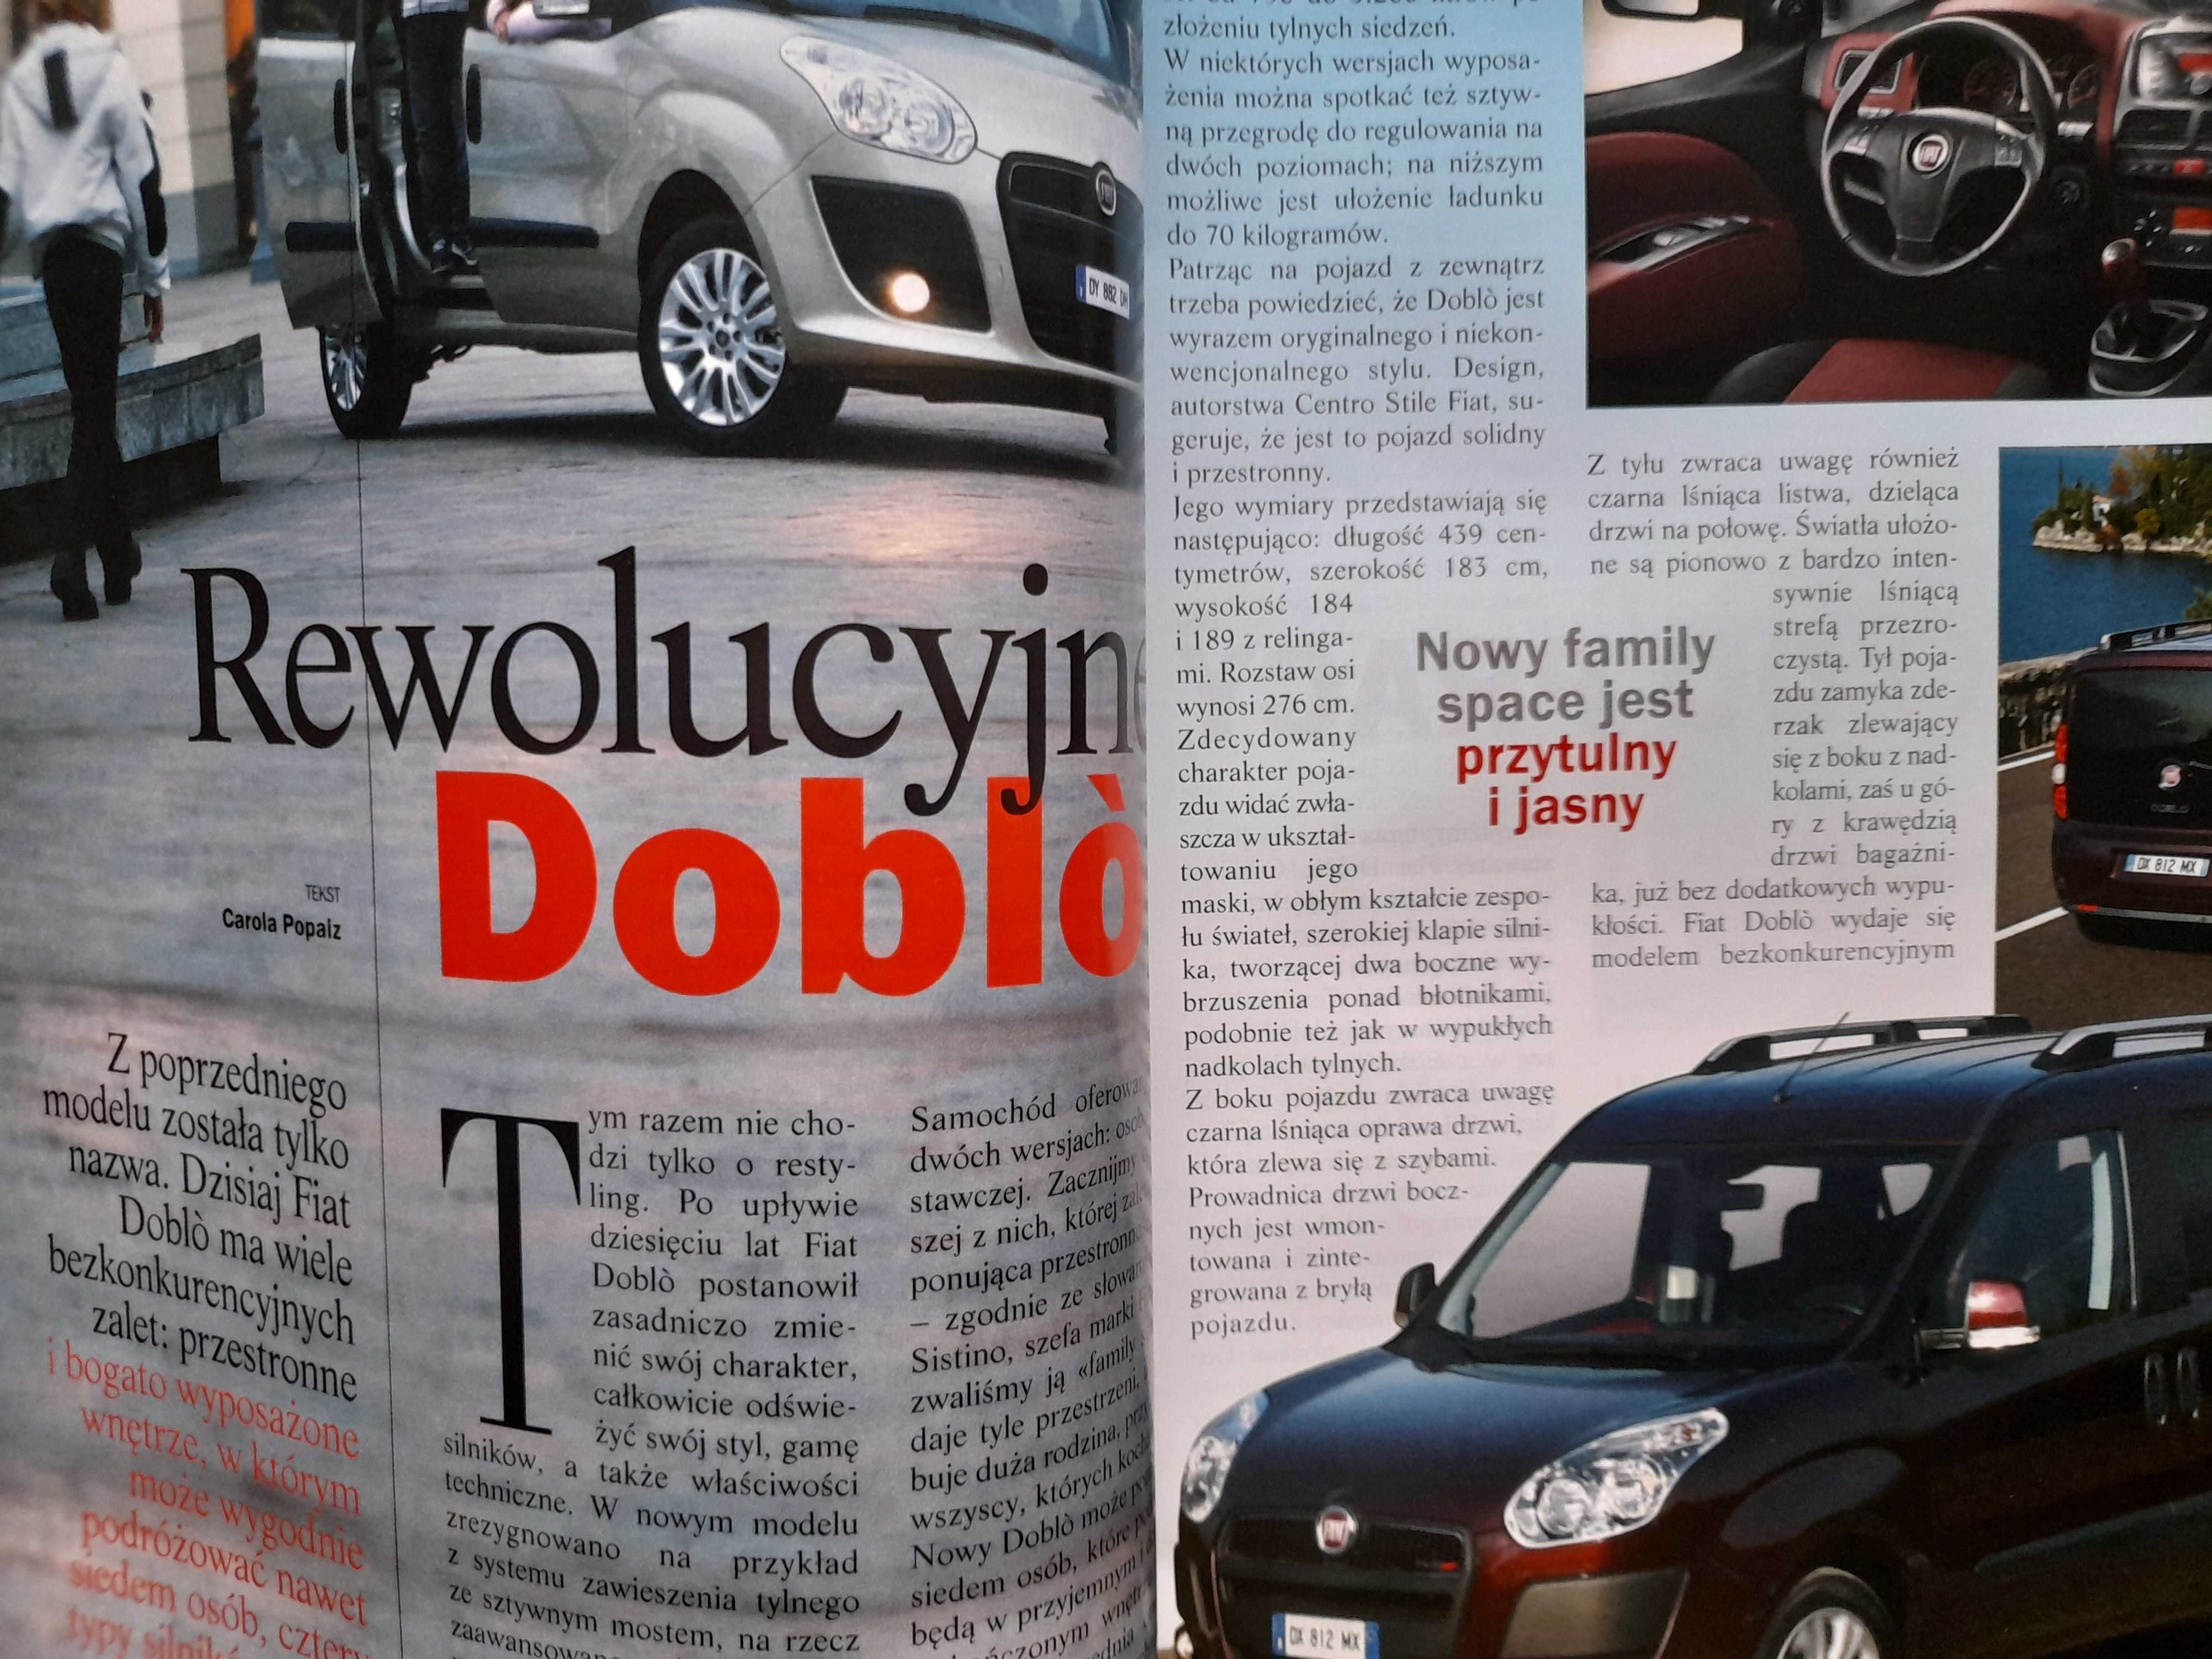 FIAT Doblo magazyn Fiat wokół nas rok 2010